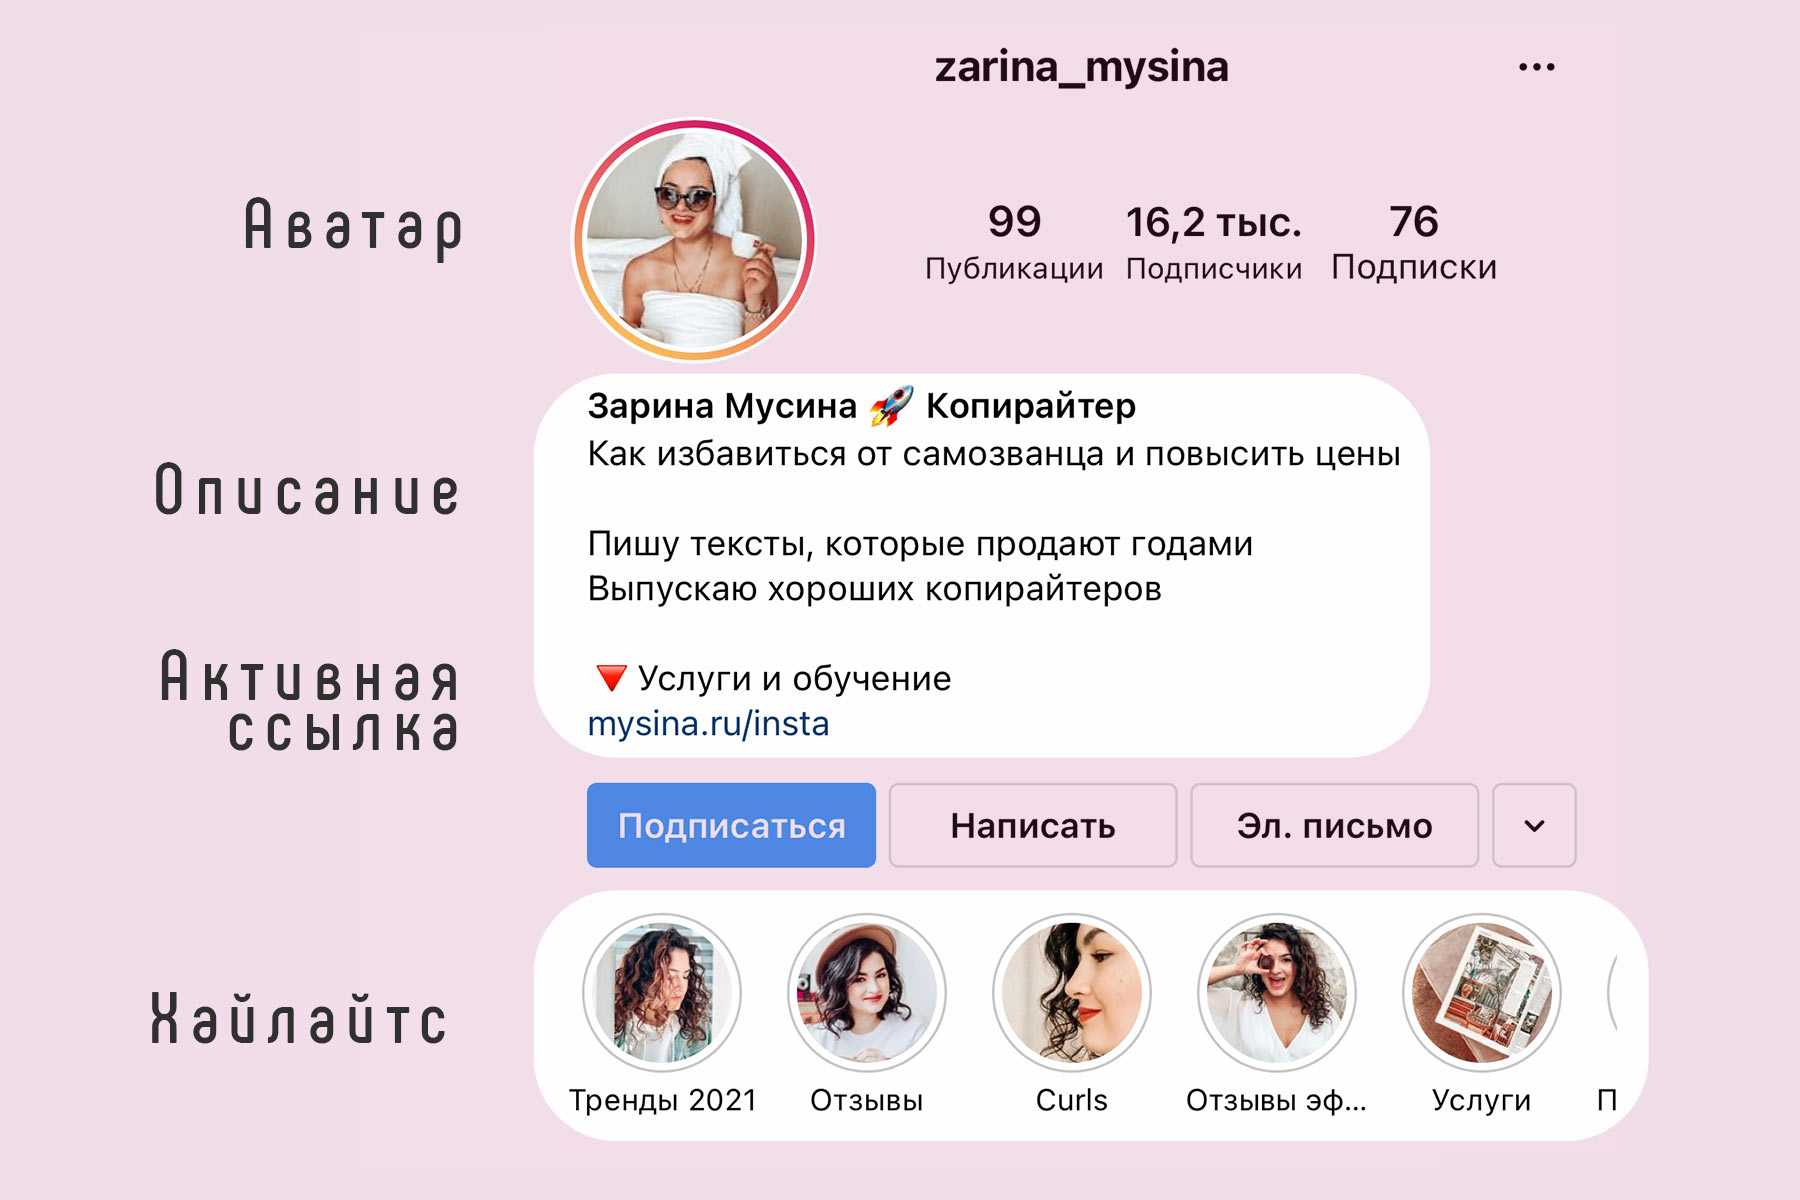 Шапка профиля в инстаграм: как сделать красивое описание профиля, которое привлечет подписчиков?